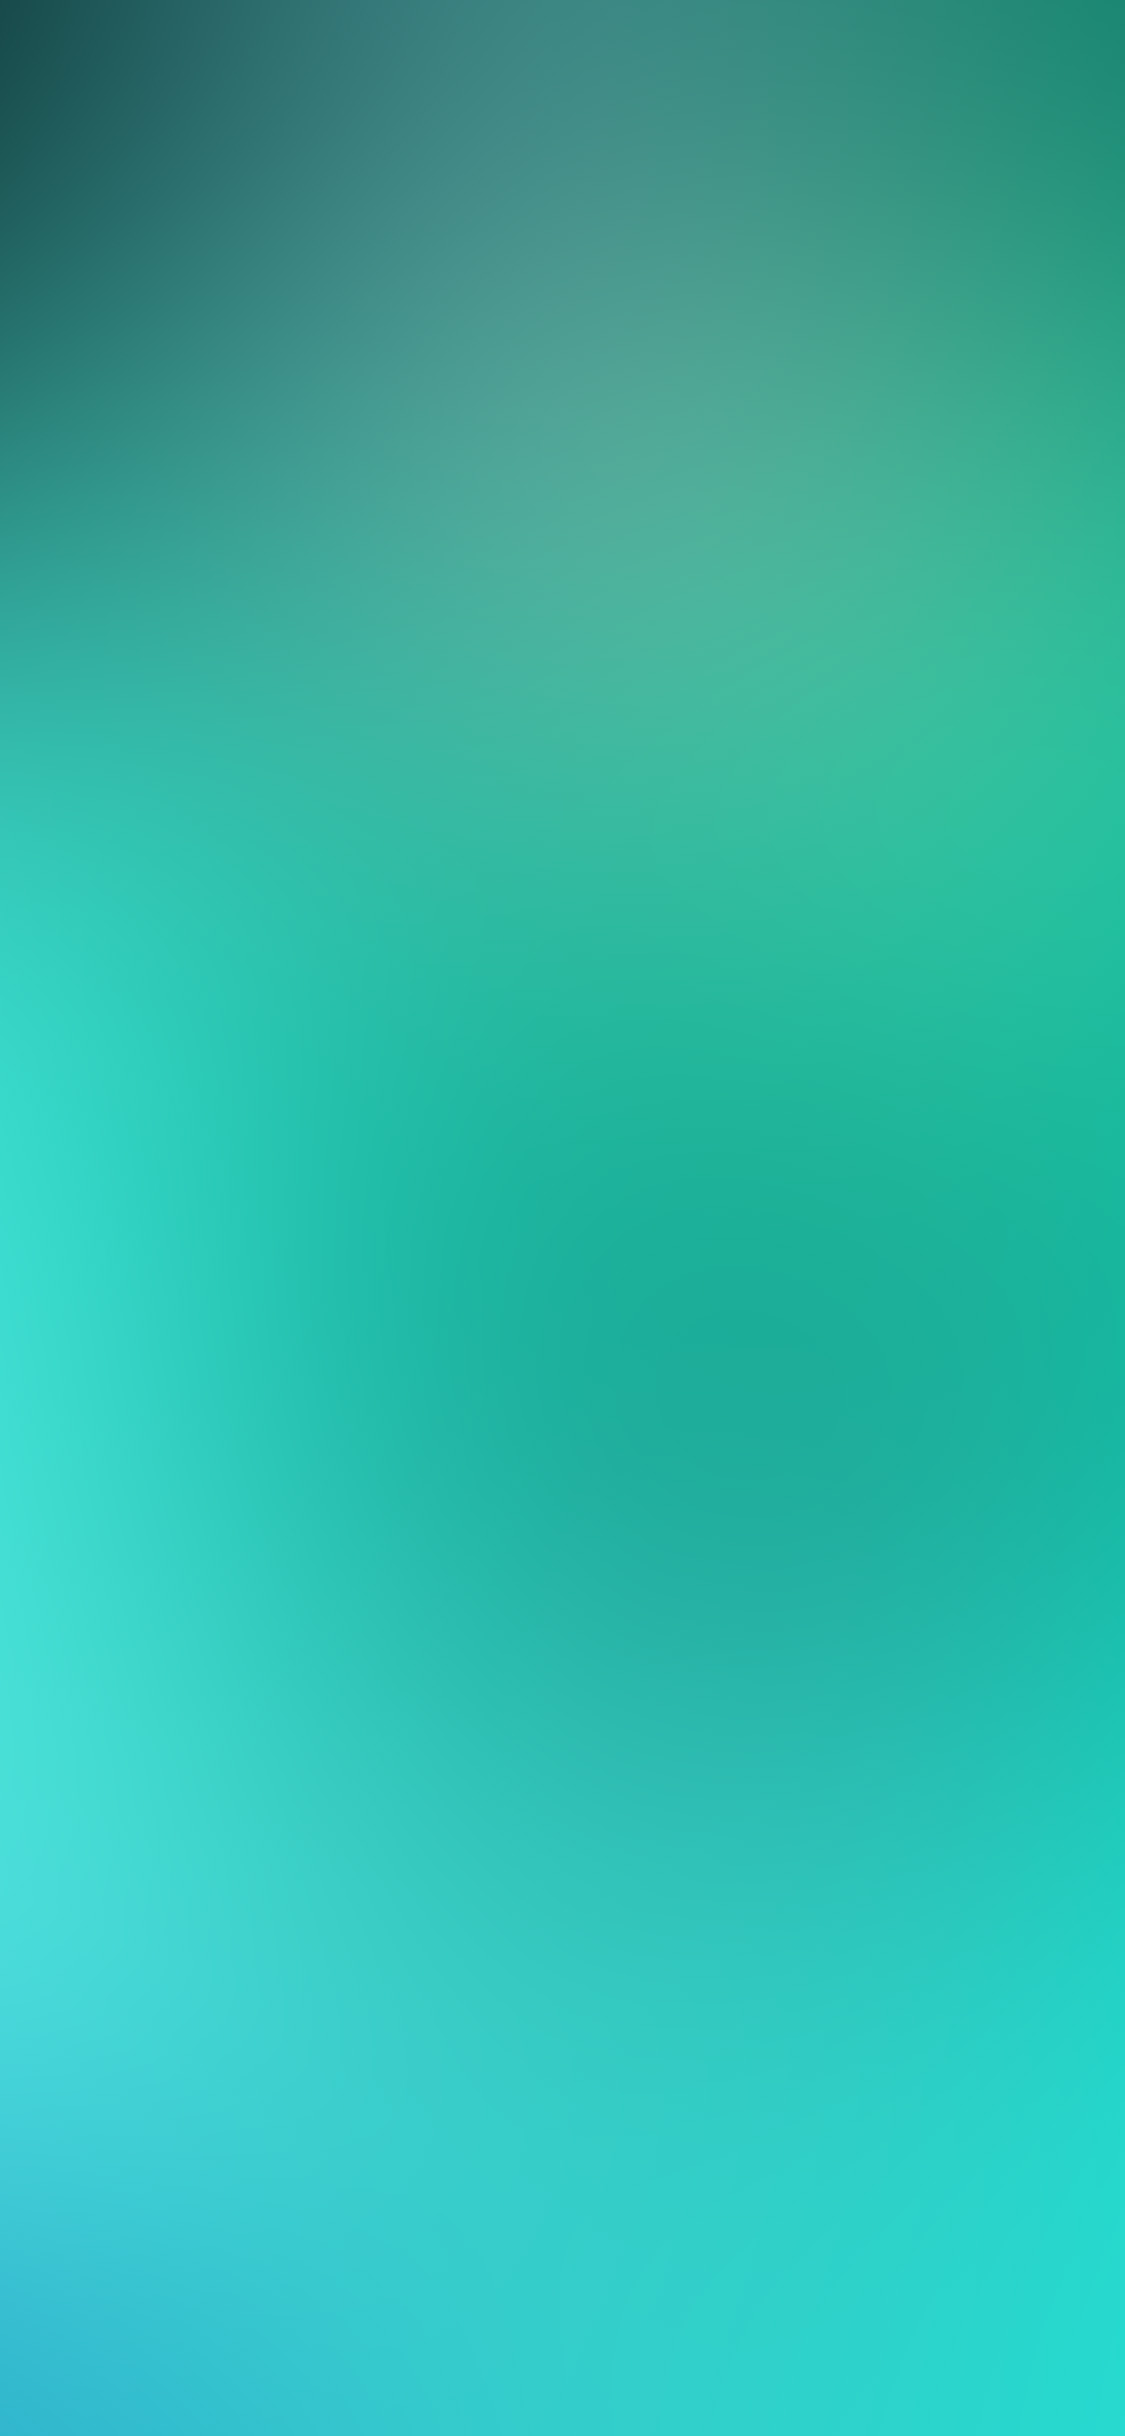 iPhone X wallpaper. blur gradation green